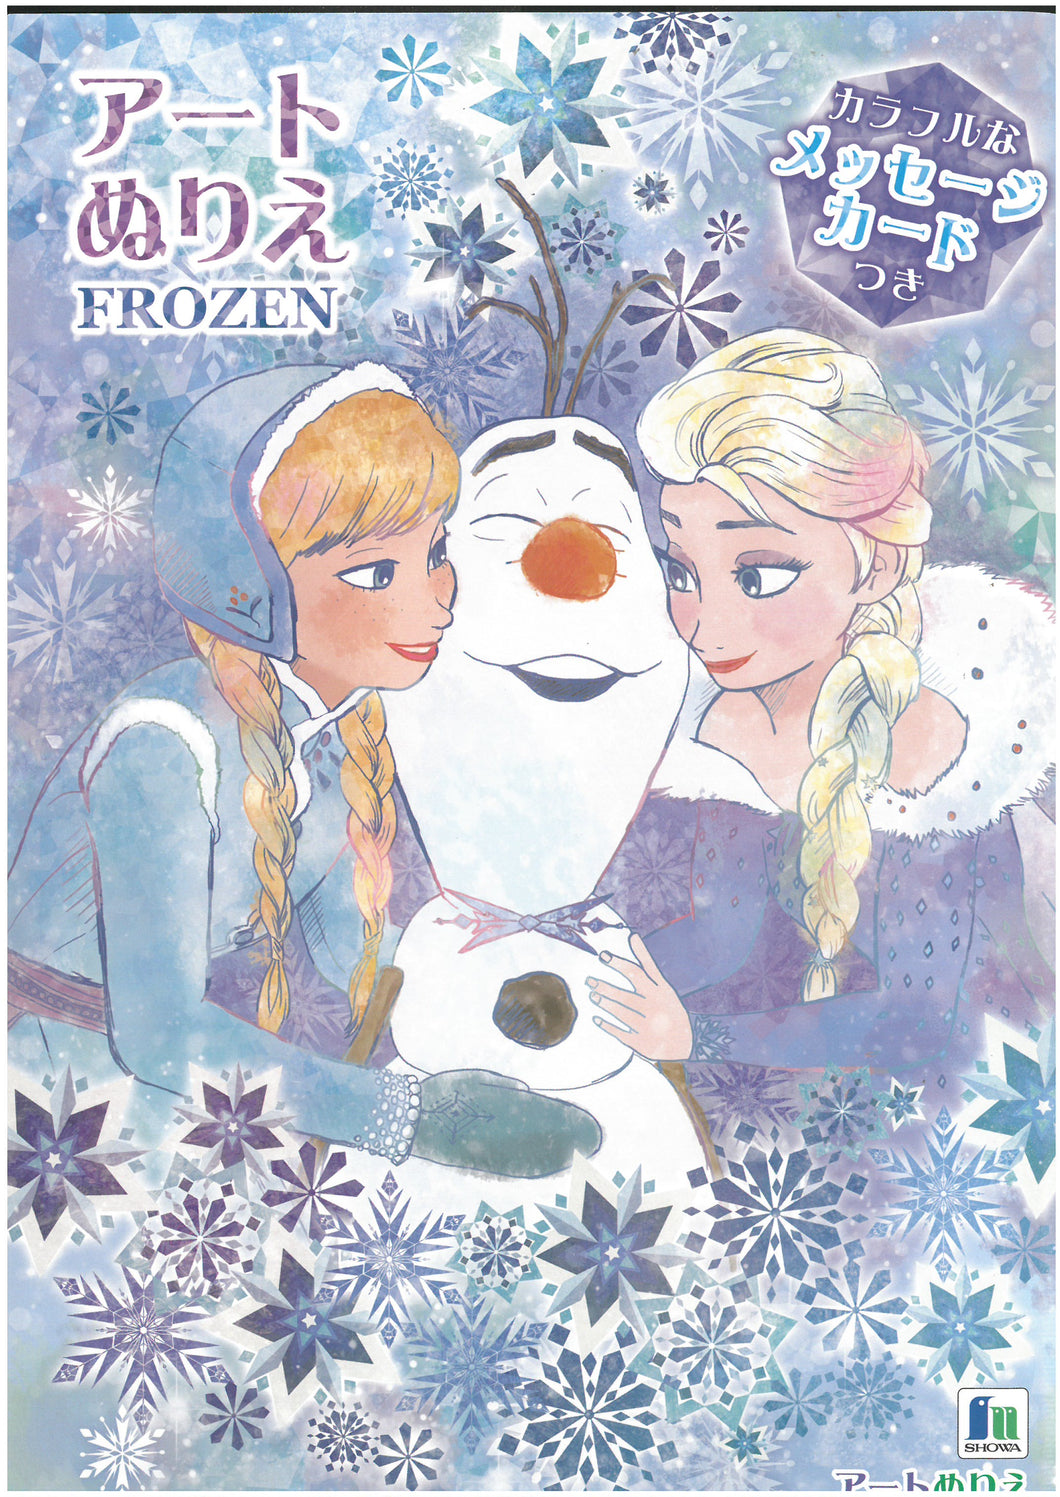 500-4627-01  Frozen  冰雪奇緣  B5填色簿 (P10)